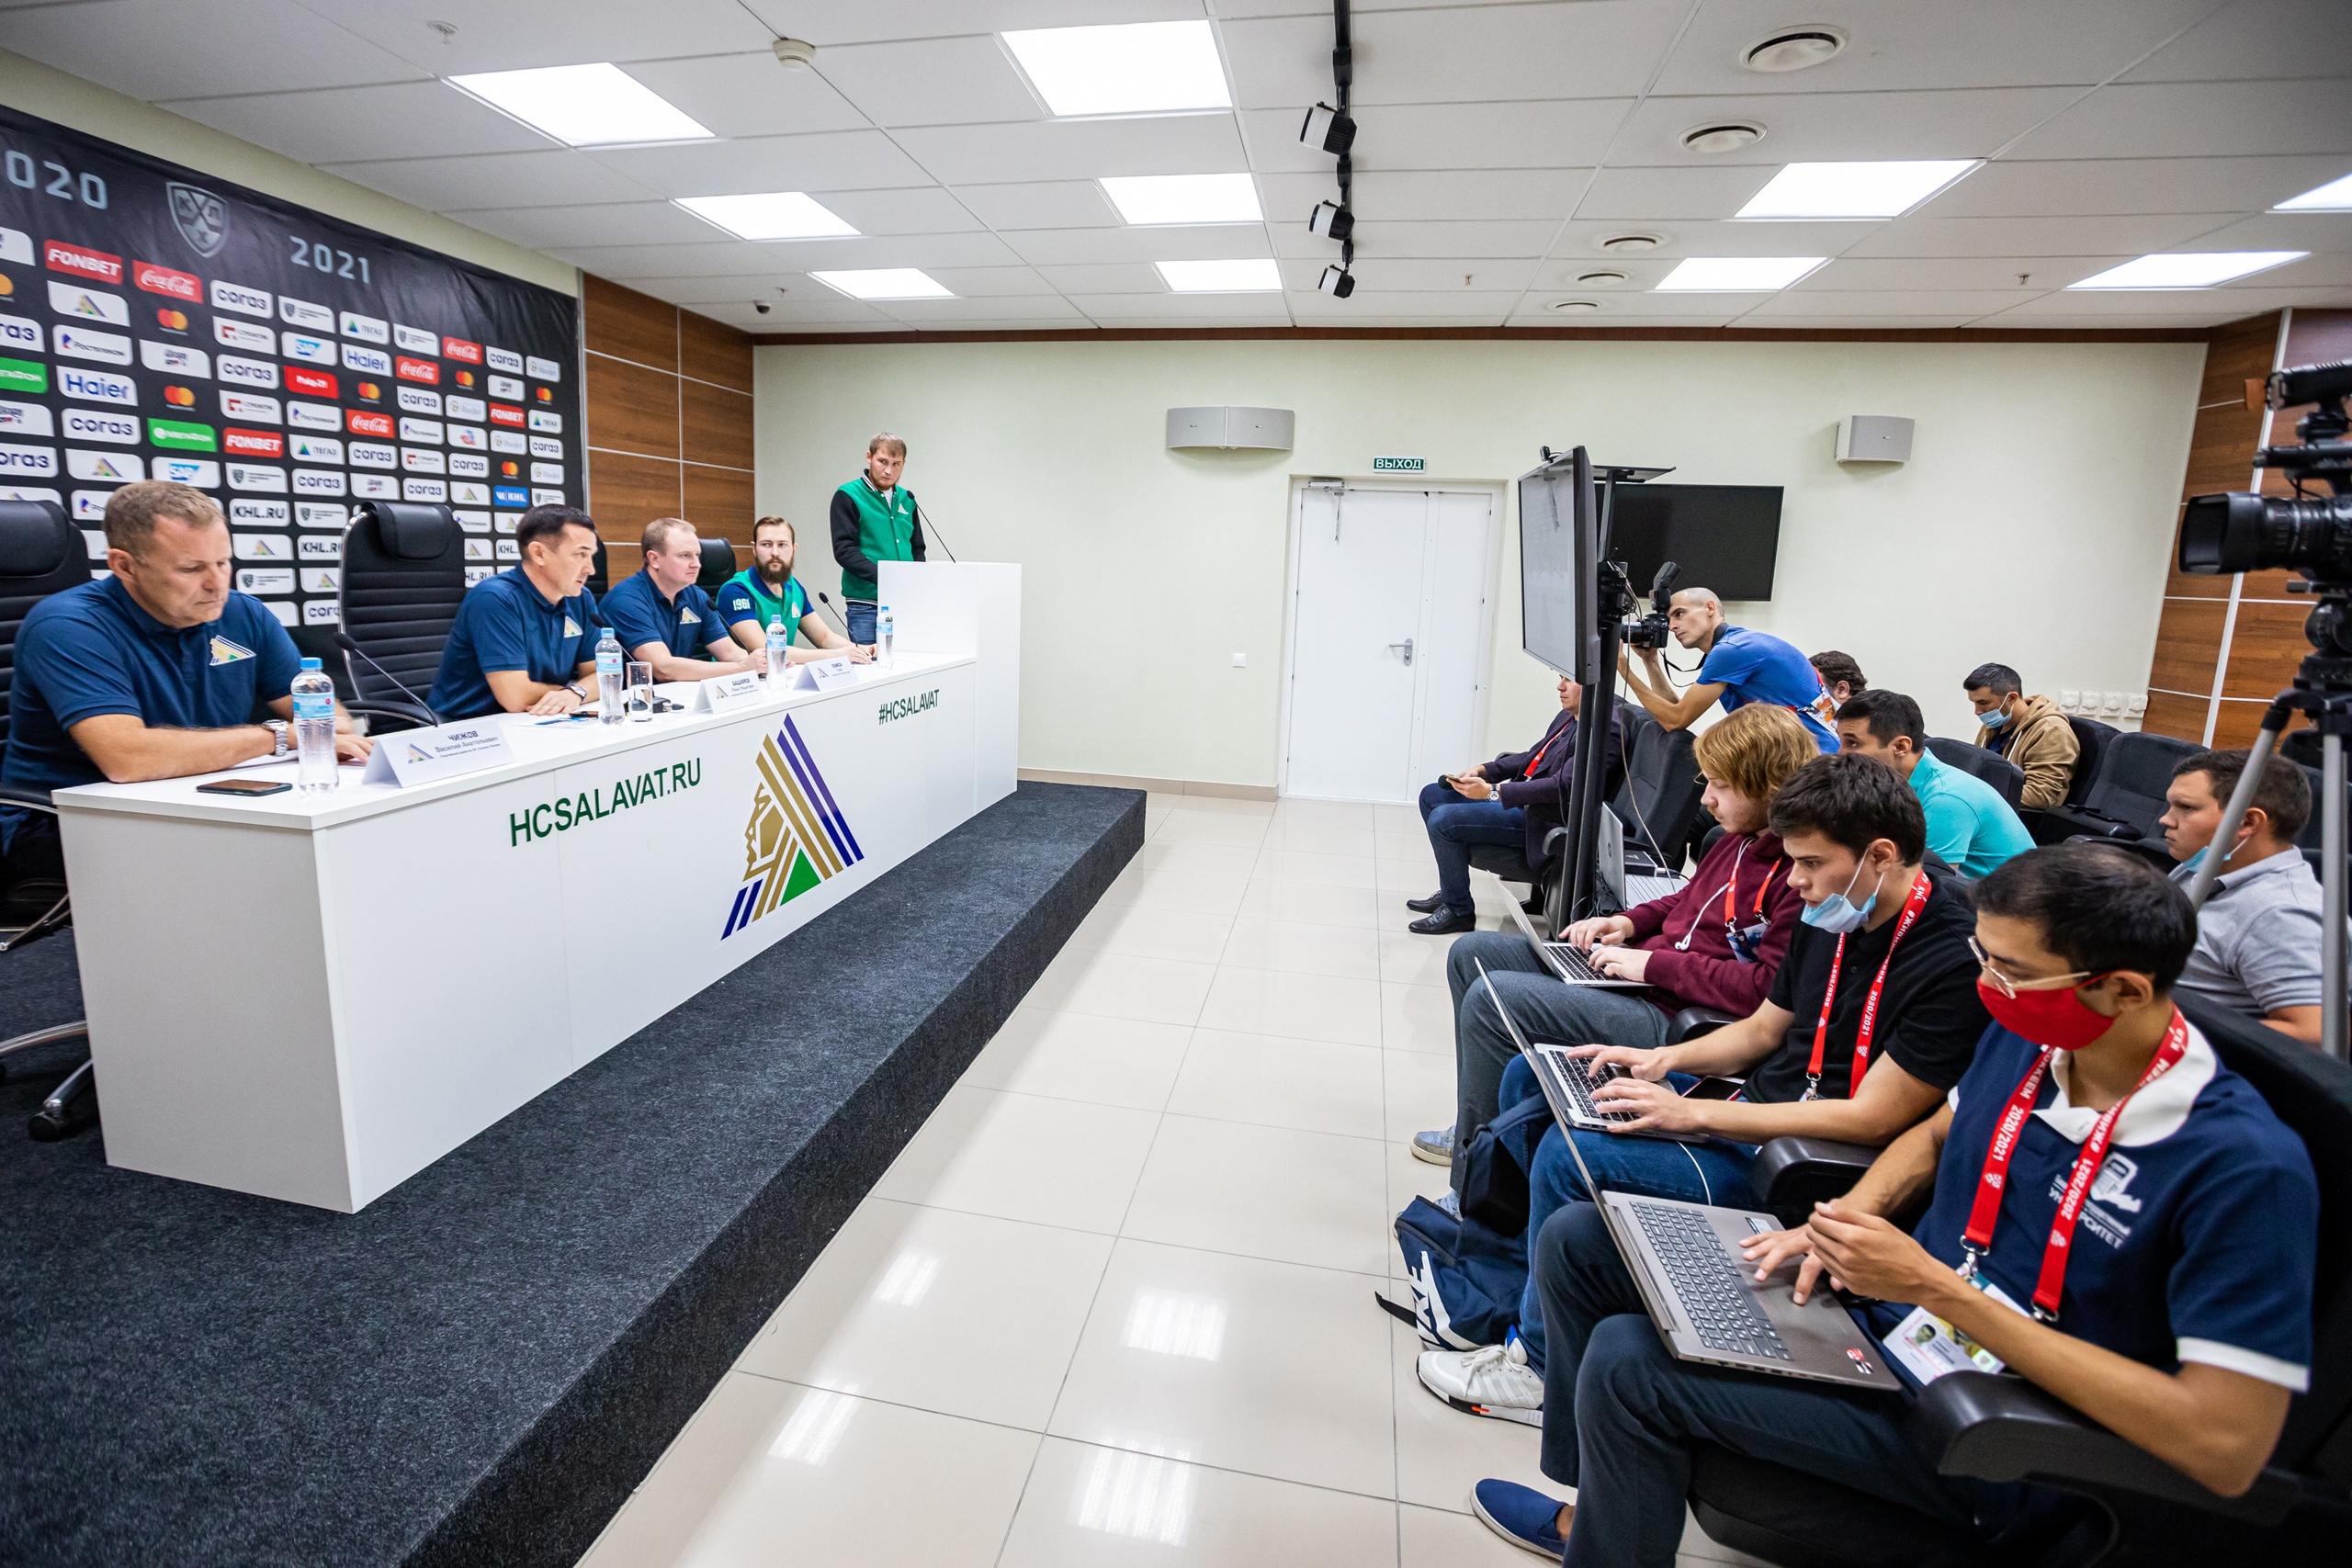 Сегодня в «Уфа-Арене» прошла встреча руководства ХК «Салават Юлаев» с представителями средств массовой информации, посвященная предстоящему сезону КХЛ 2021/2022